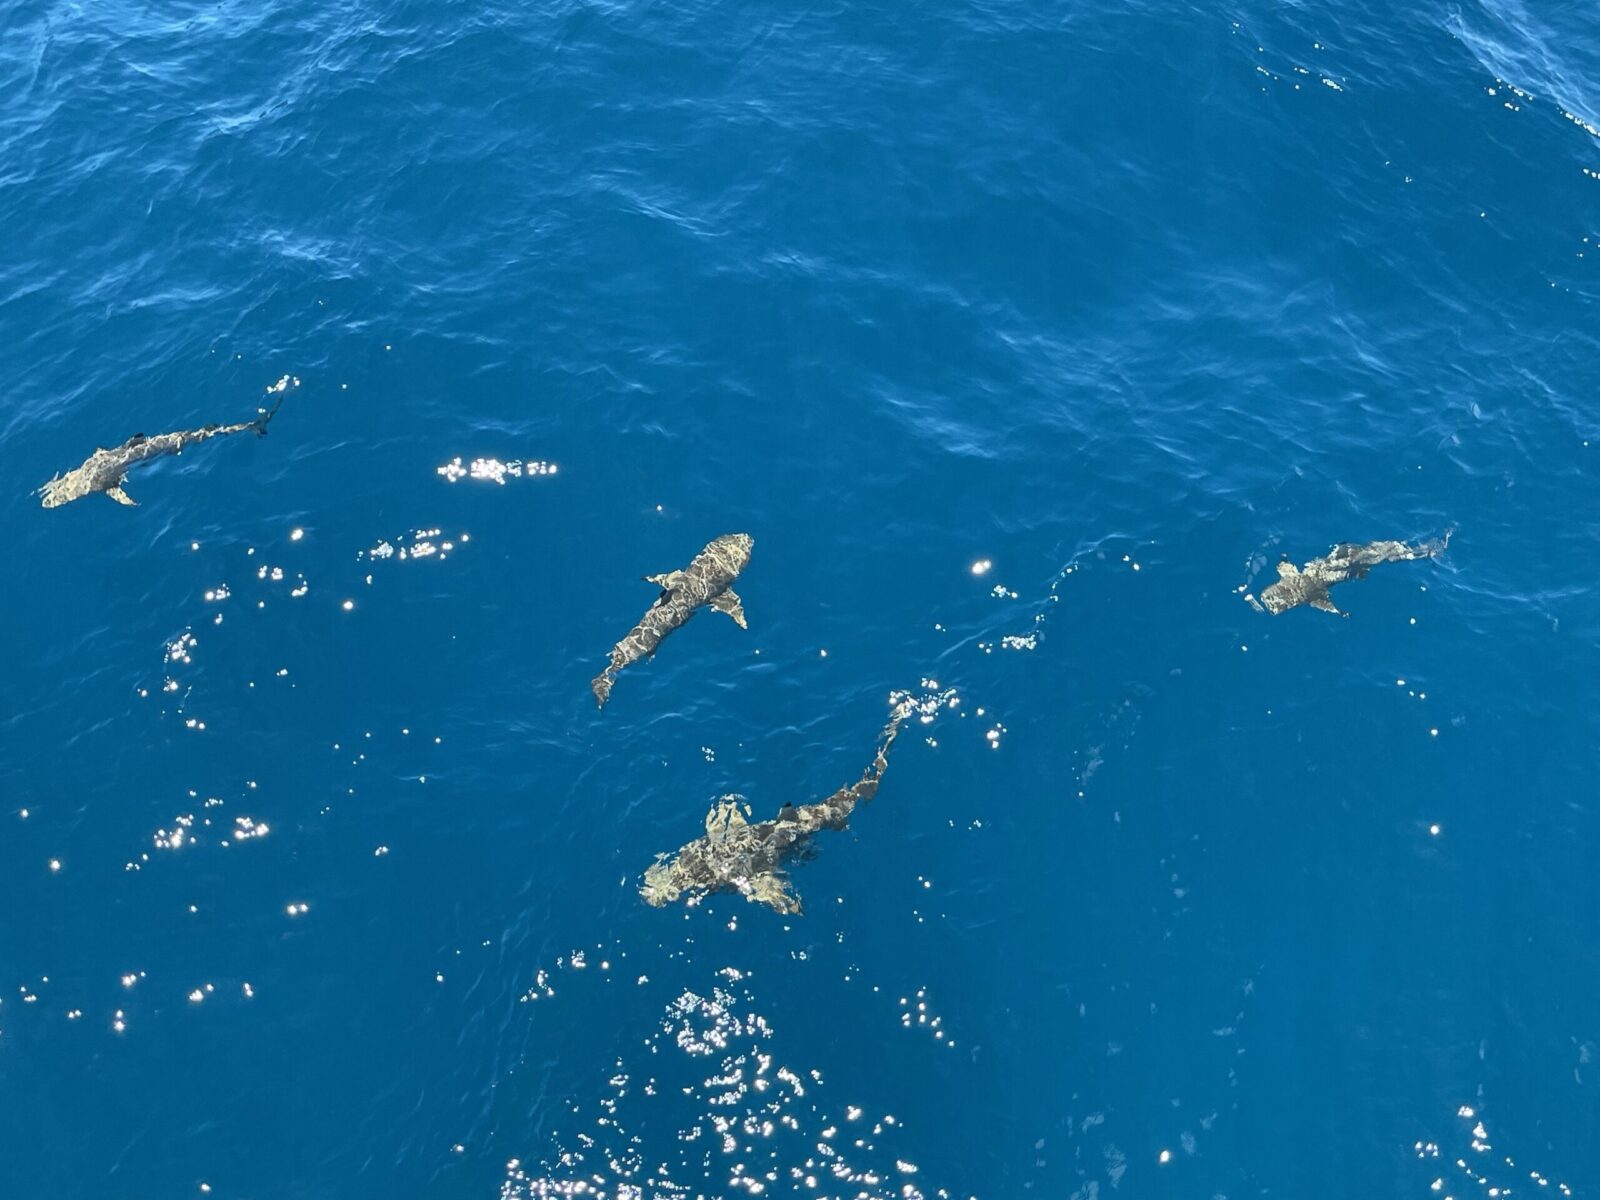 Swimming sharks in Fiji waters